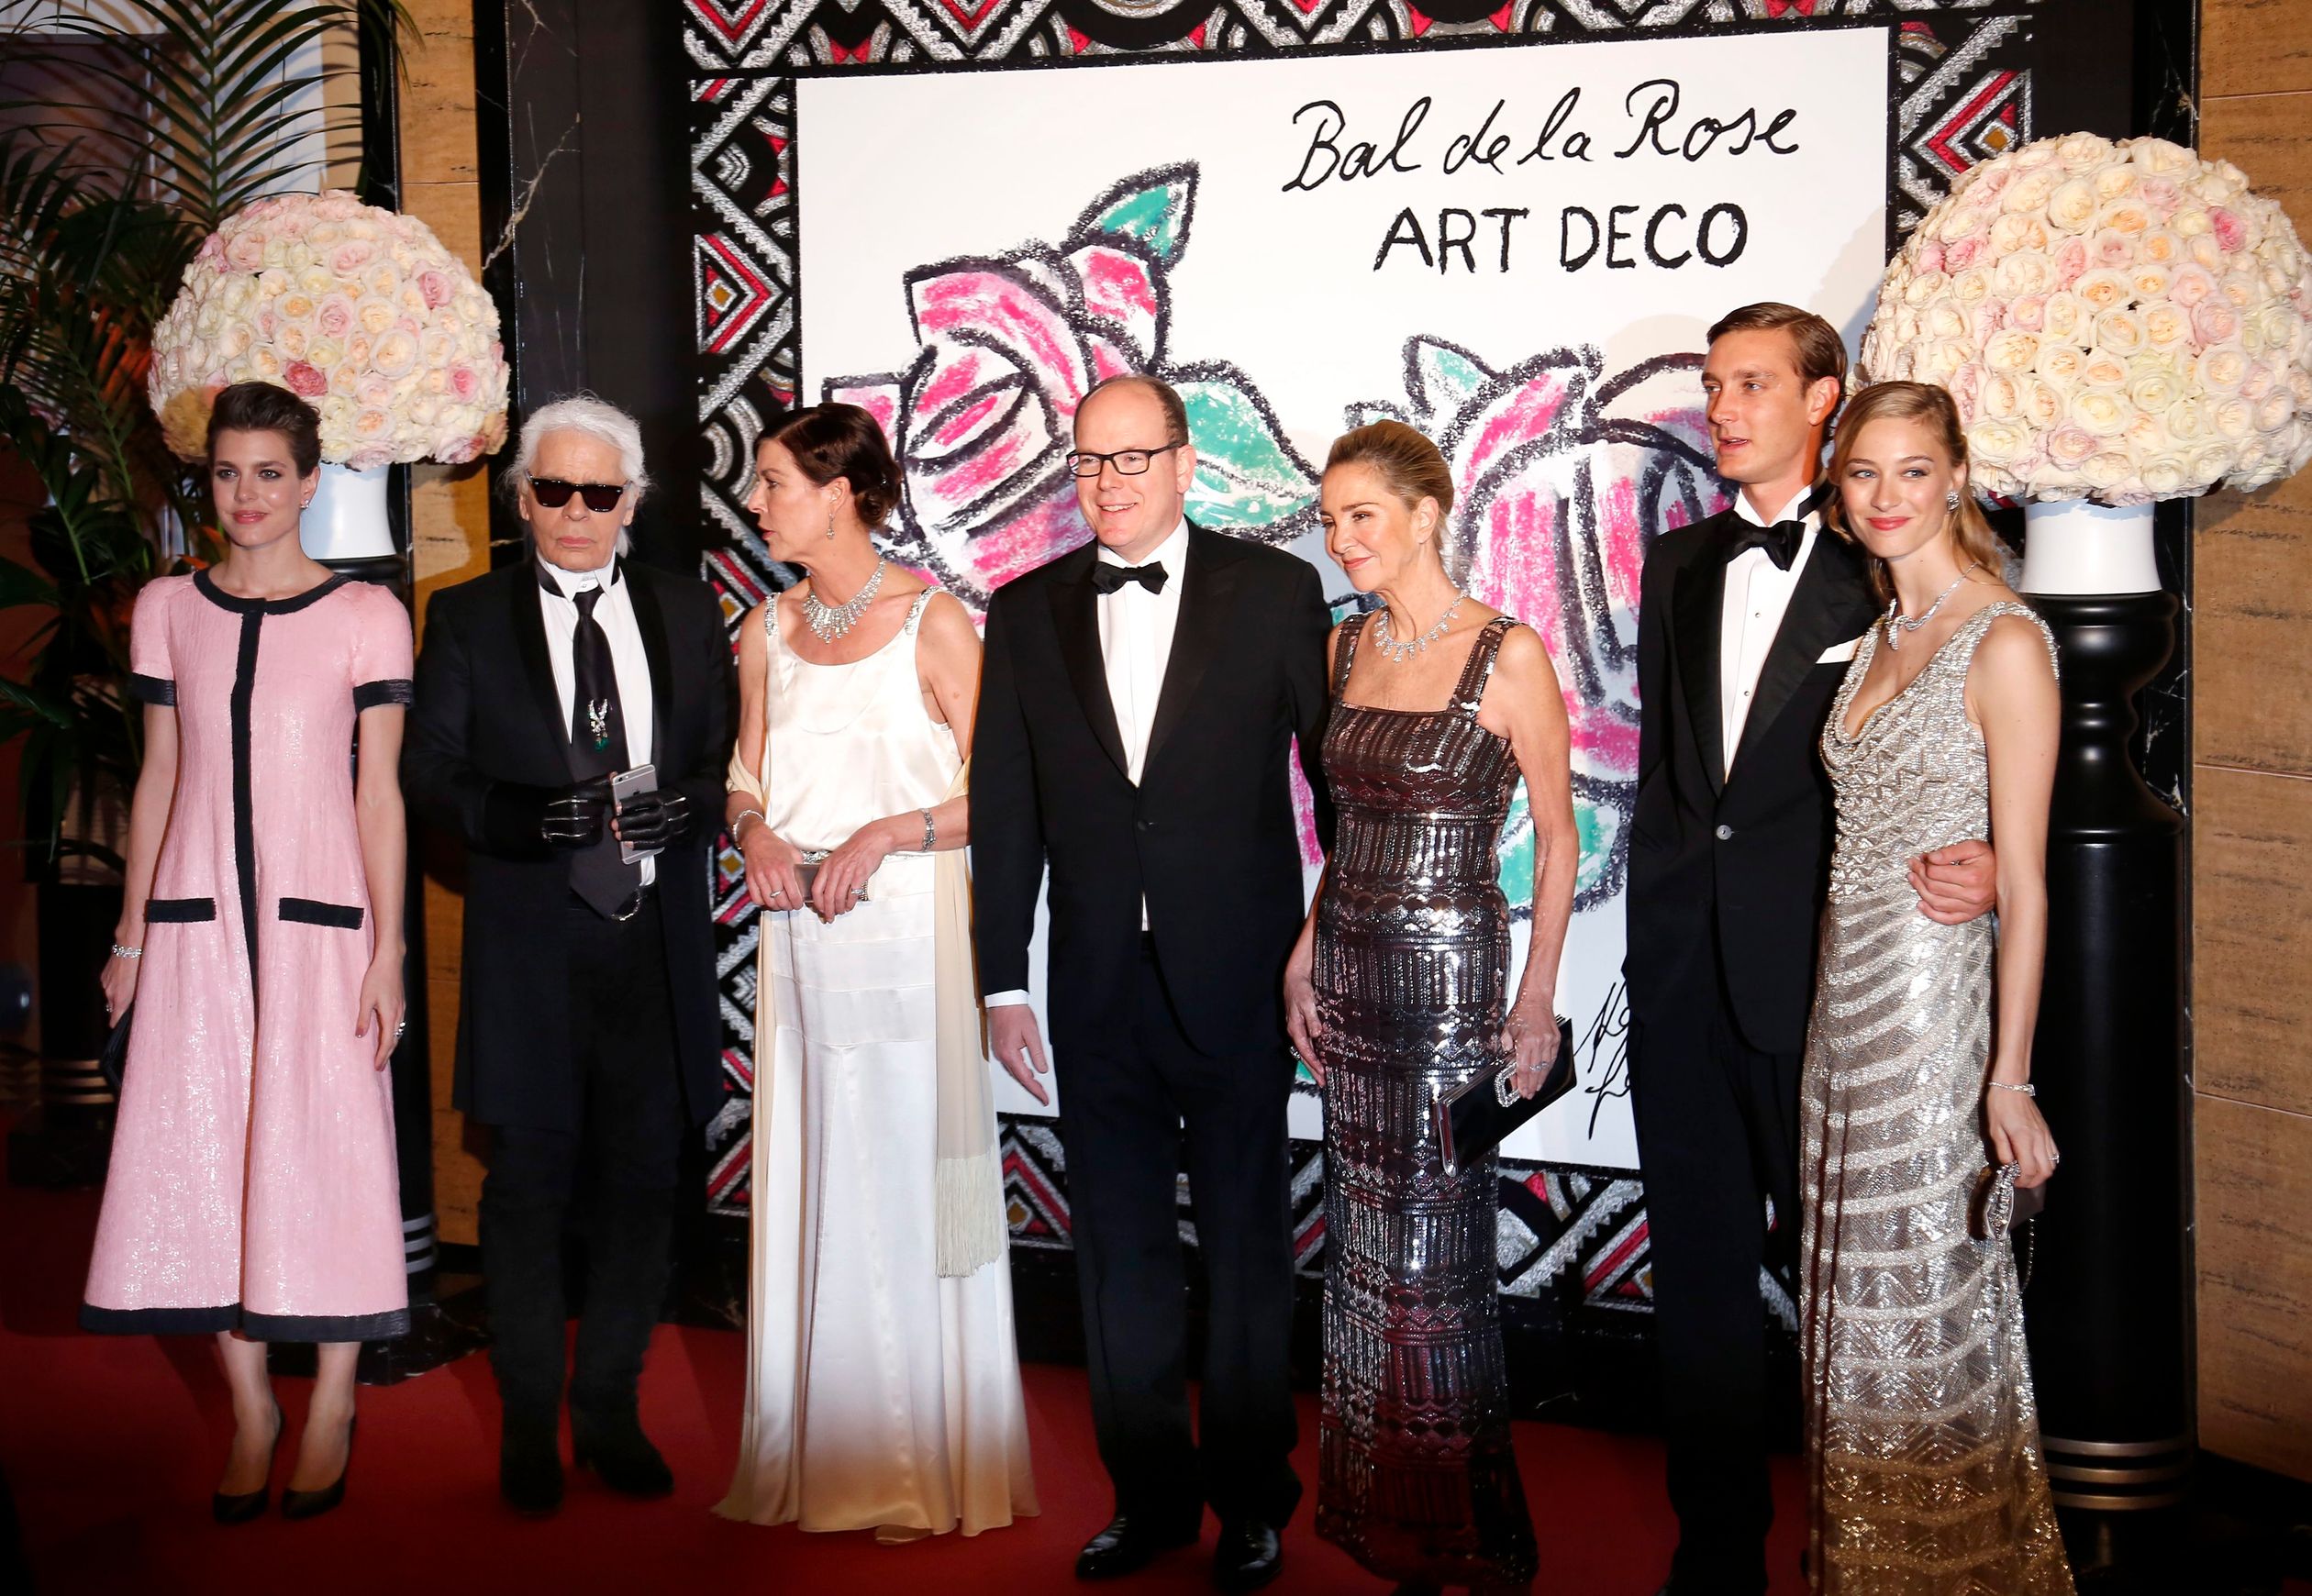 In 2015 kiest Karl Lagerfeld voor het thema 'Art deco'.